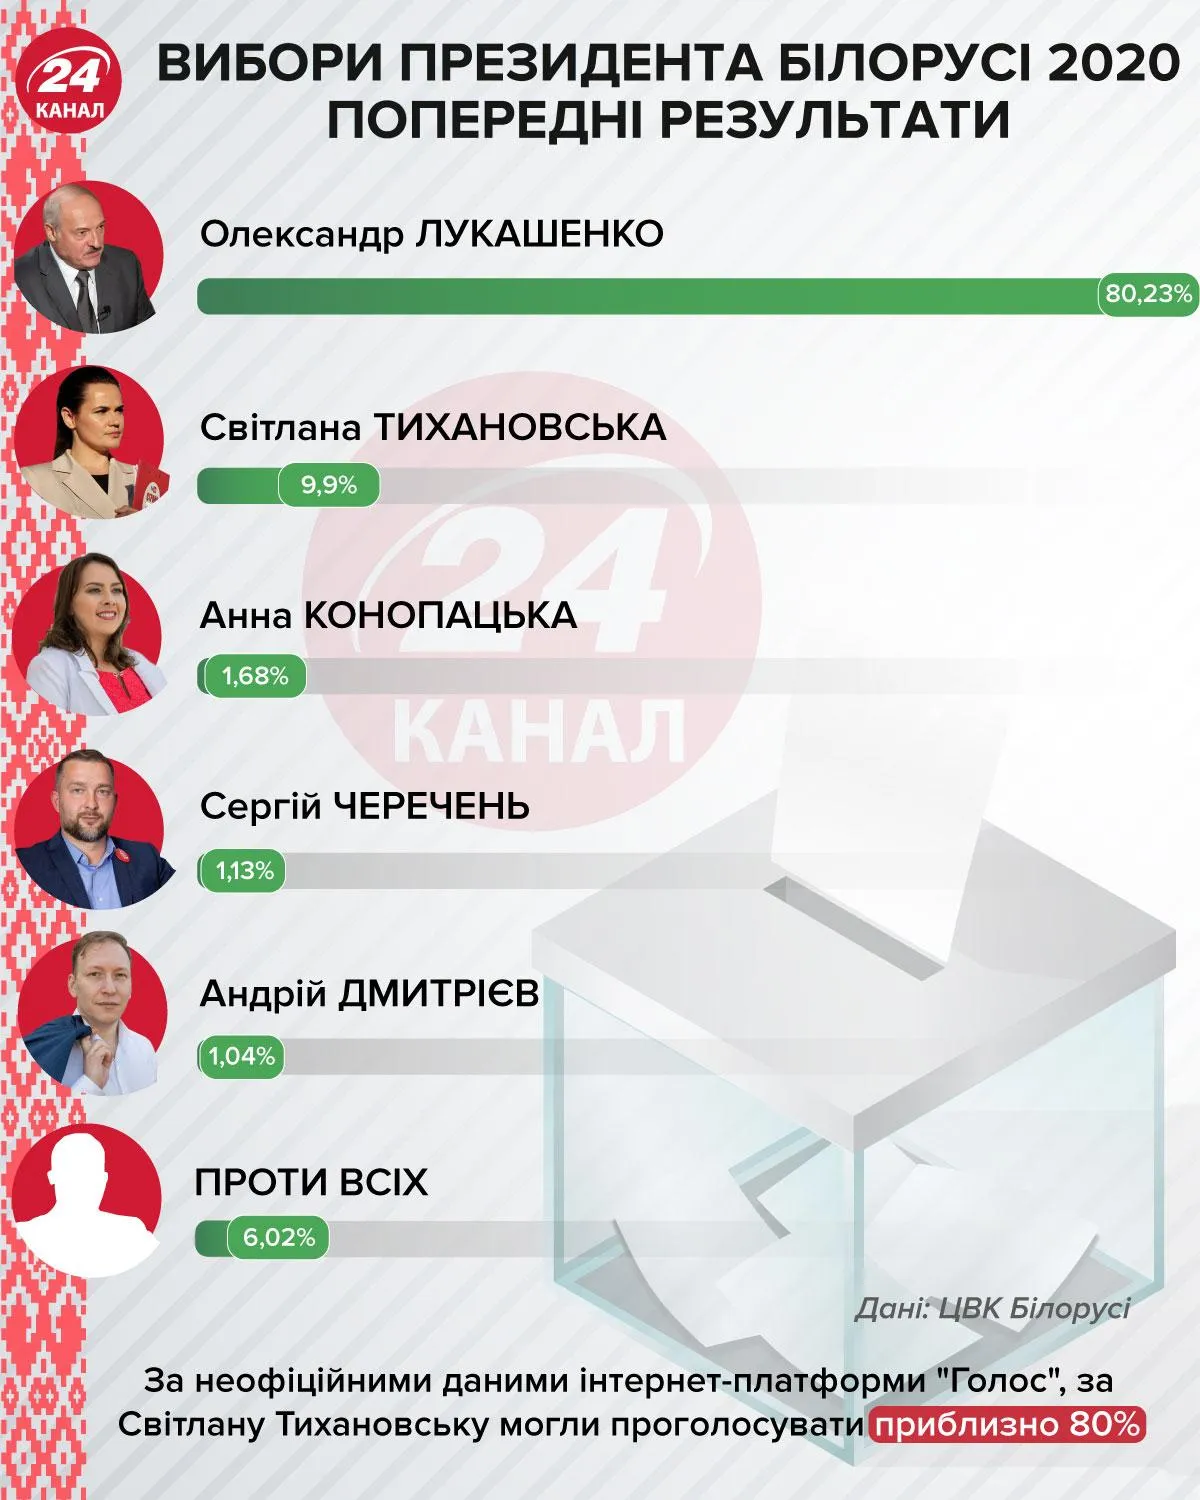 Предварительные результаты выборов в Беларуси инфографика 24 канал